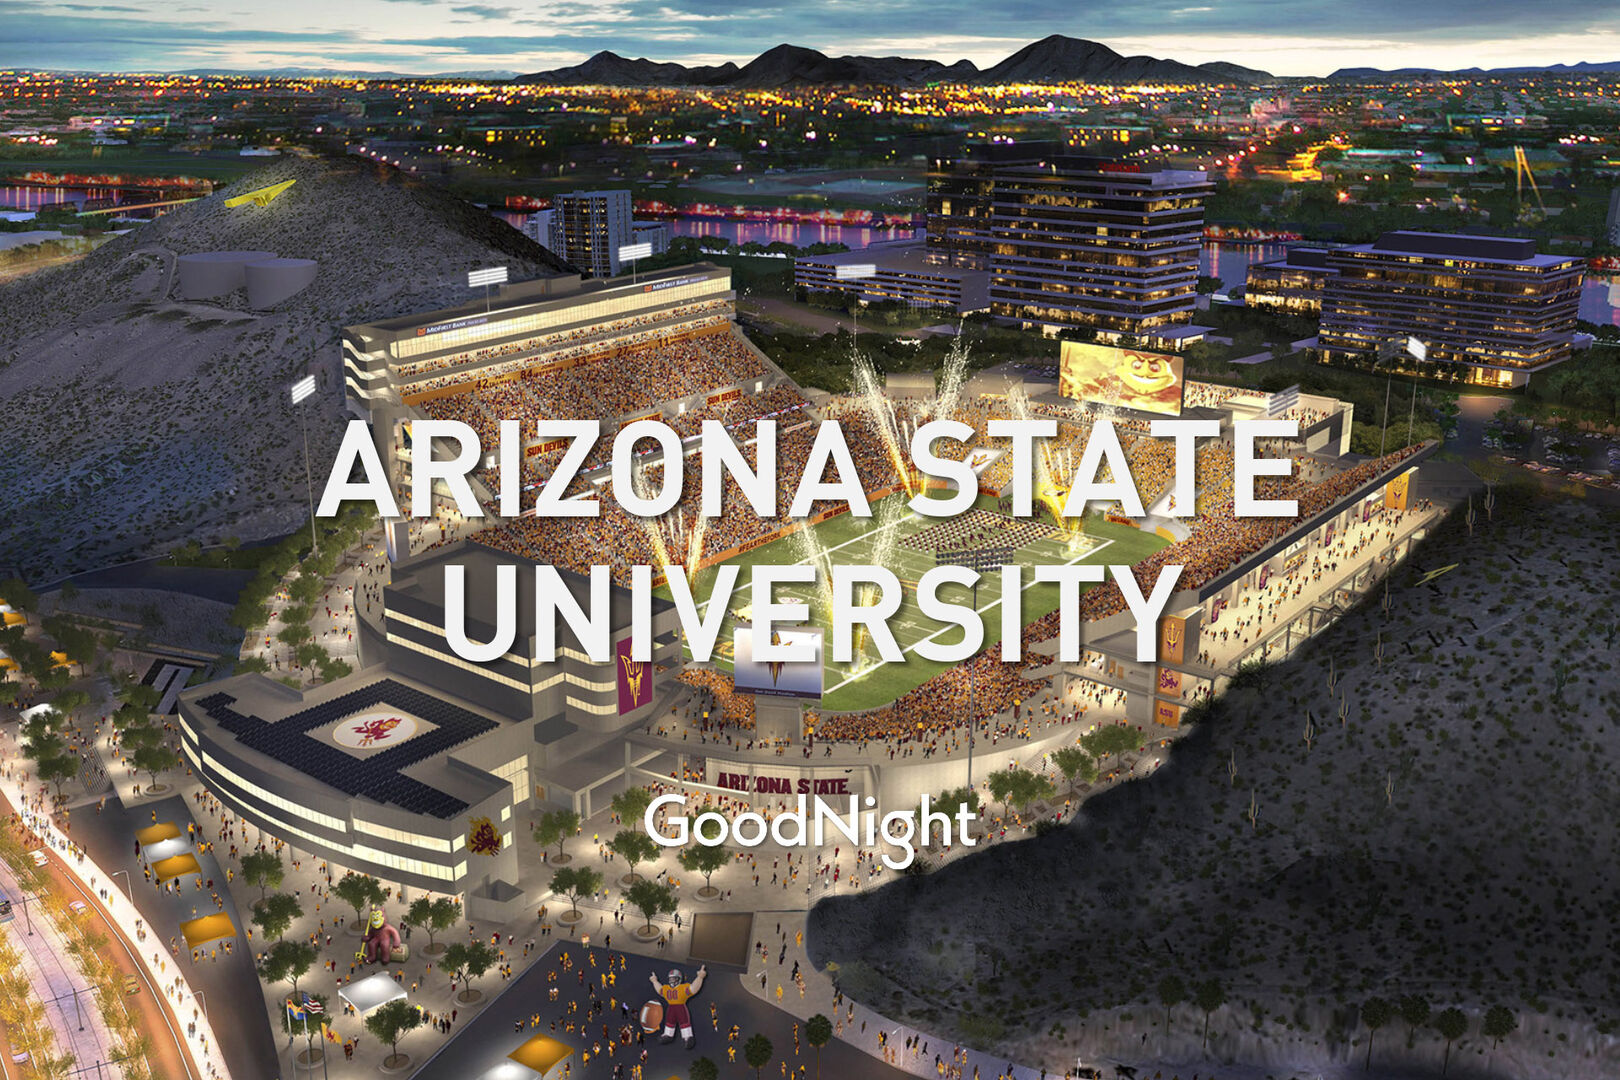 18 mins: Arizona State University